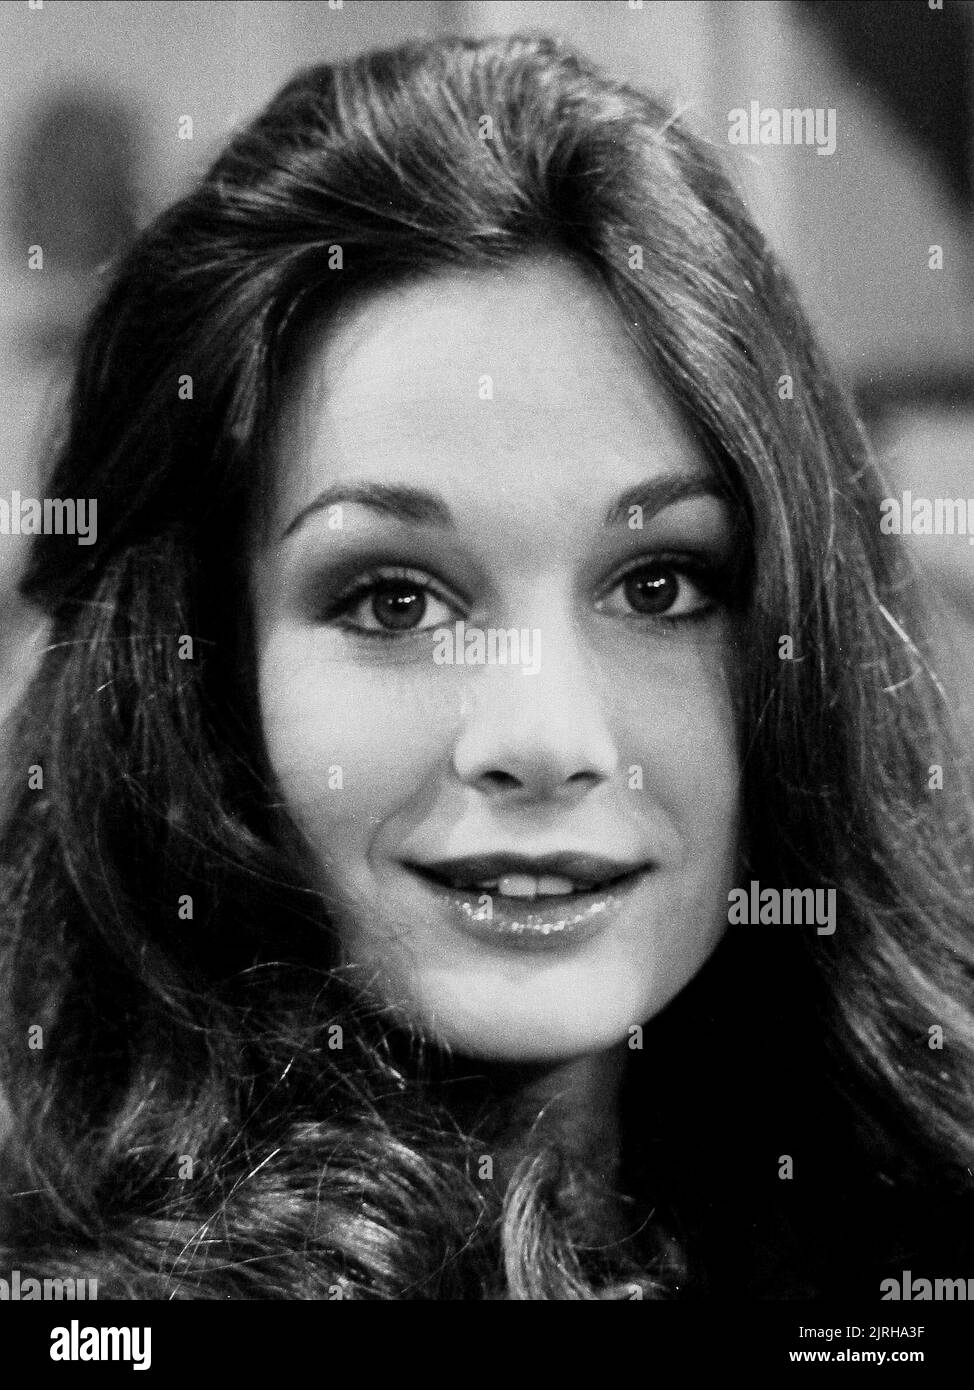 MARY CROSBY, MIDNIGHT LACE, 1981 Stock Photo